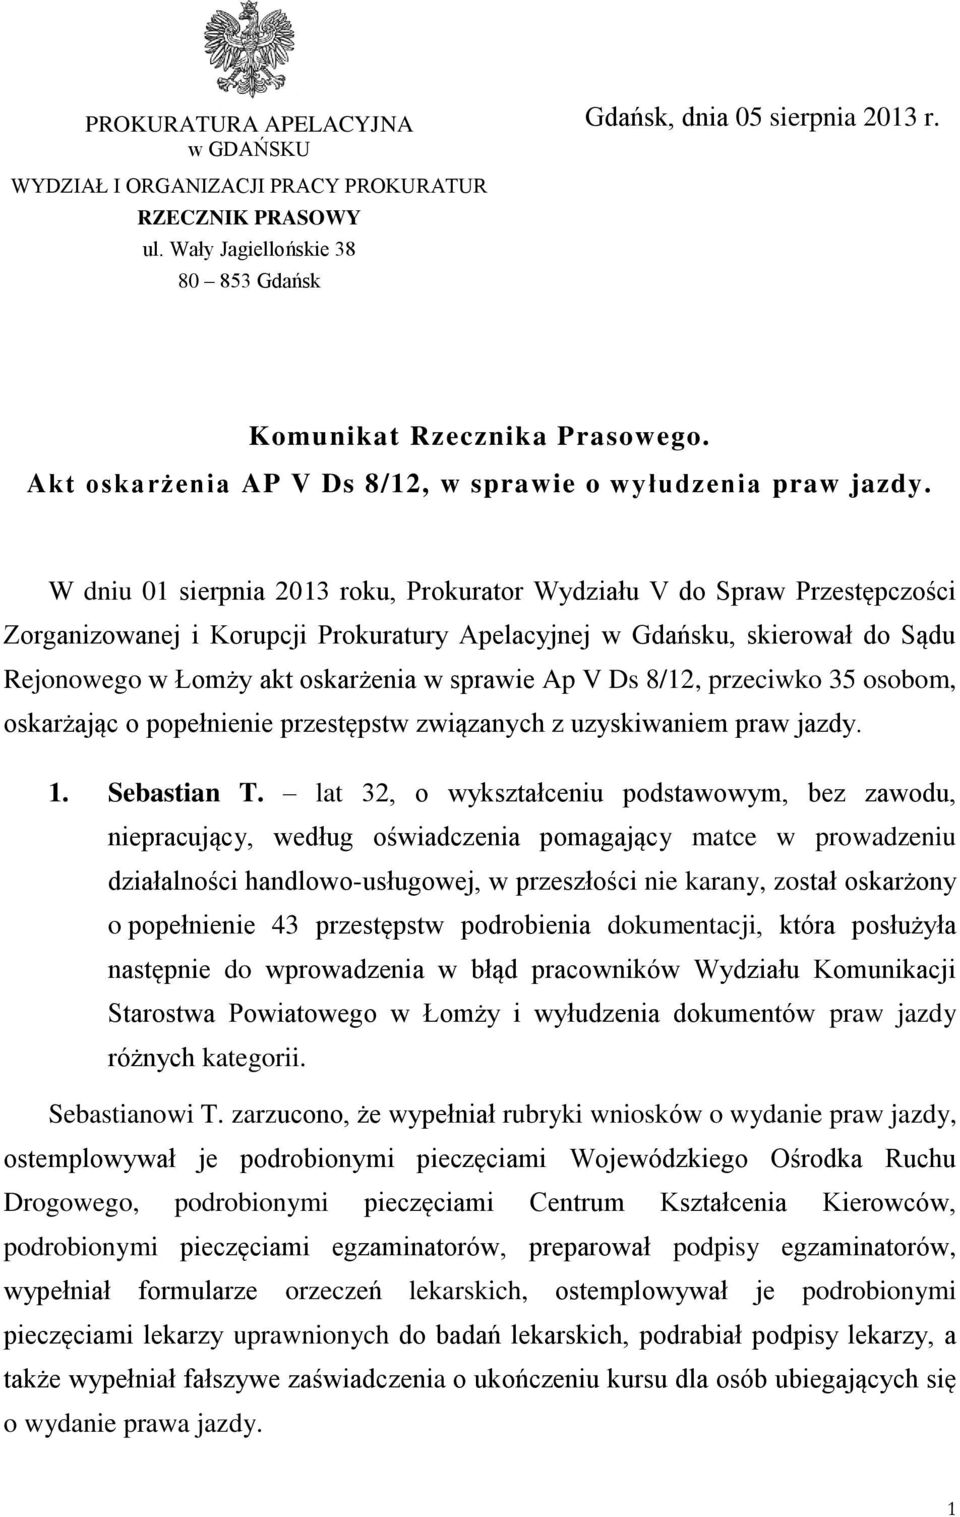 W dniu 01 sierpnia 2013 roku, Prokurator Wydziału V do Spraw Przestępczości Zorganizowanej i Korupcji Prokuratury Apelacyjnej w Gdańsku, skierował do Sądu Rejonowego w Łomży akt oskarżenia w sprawie